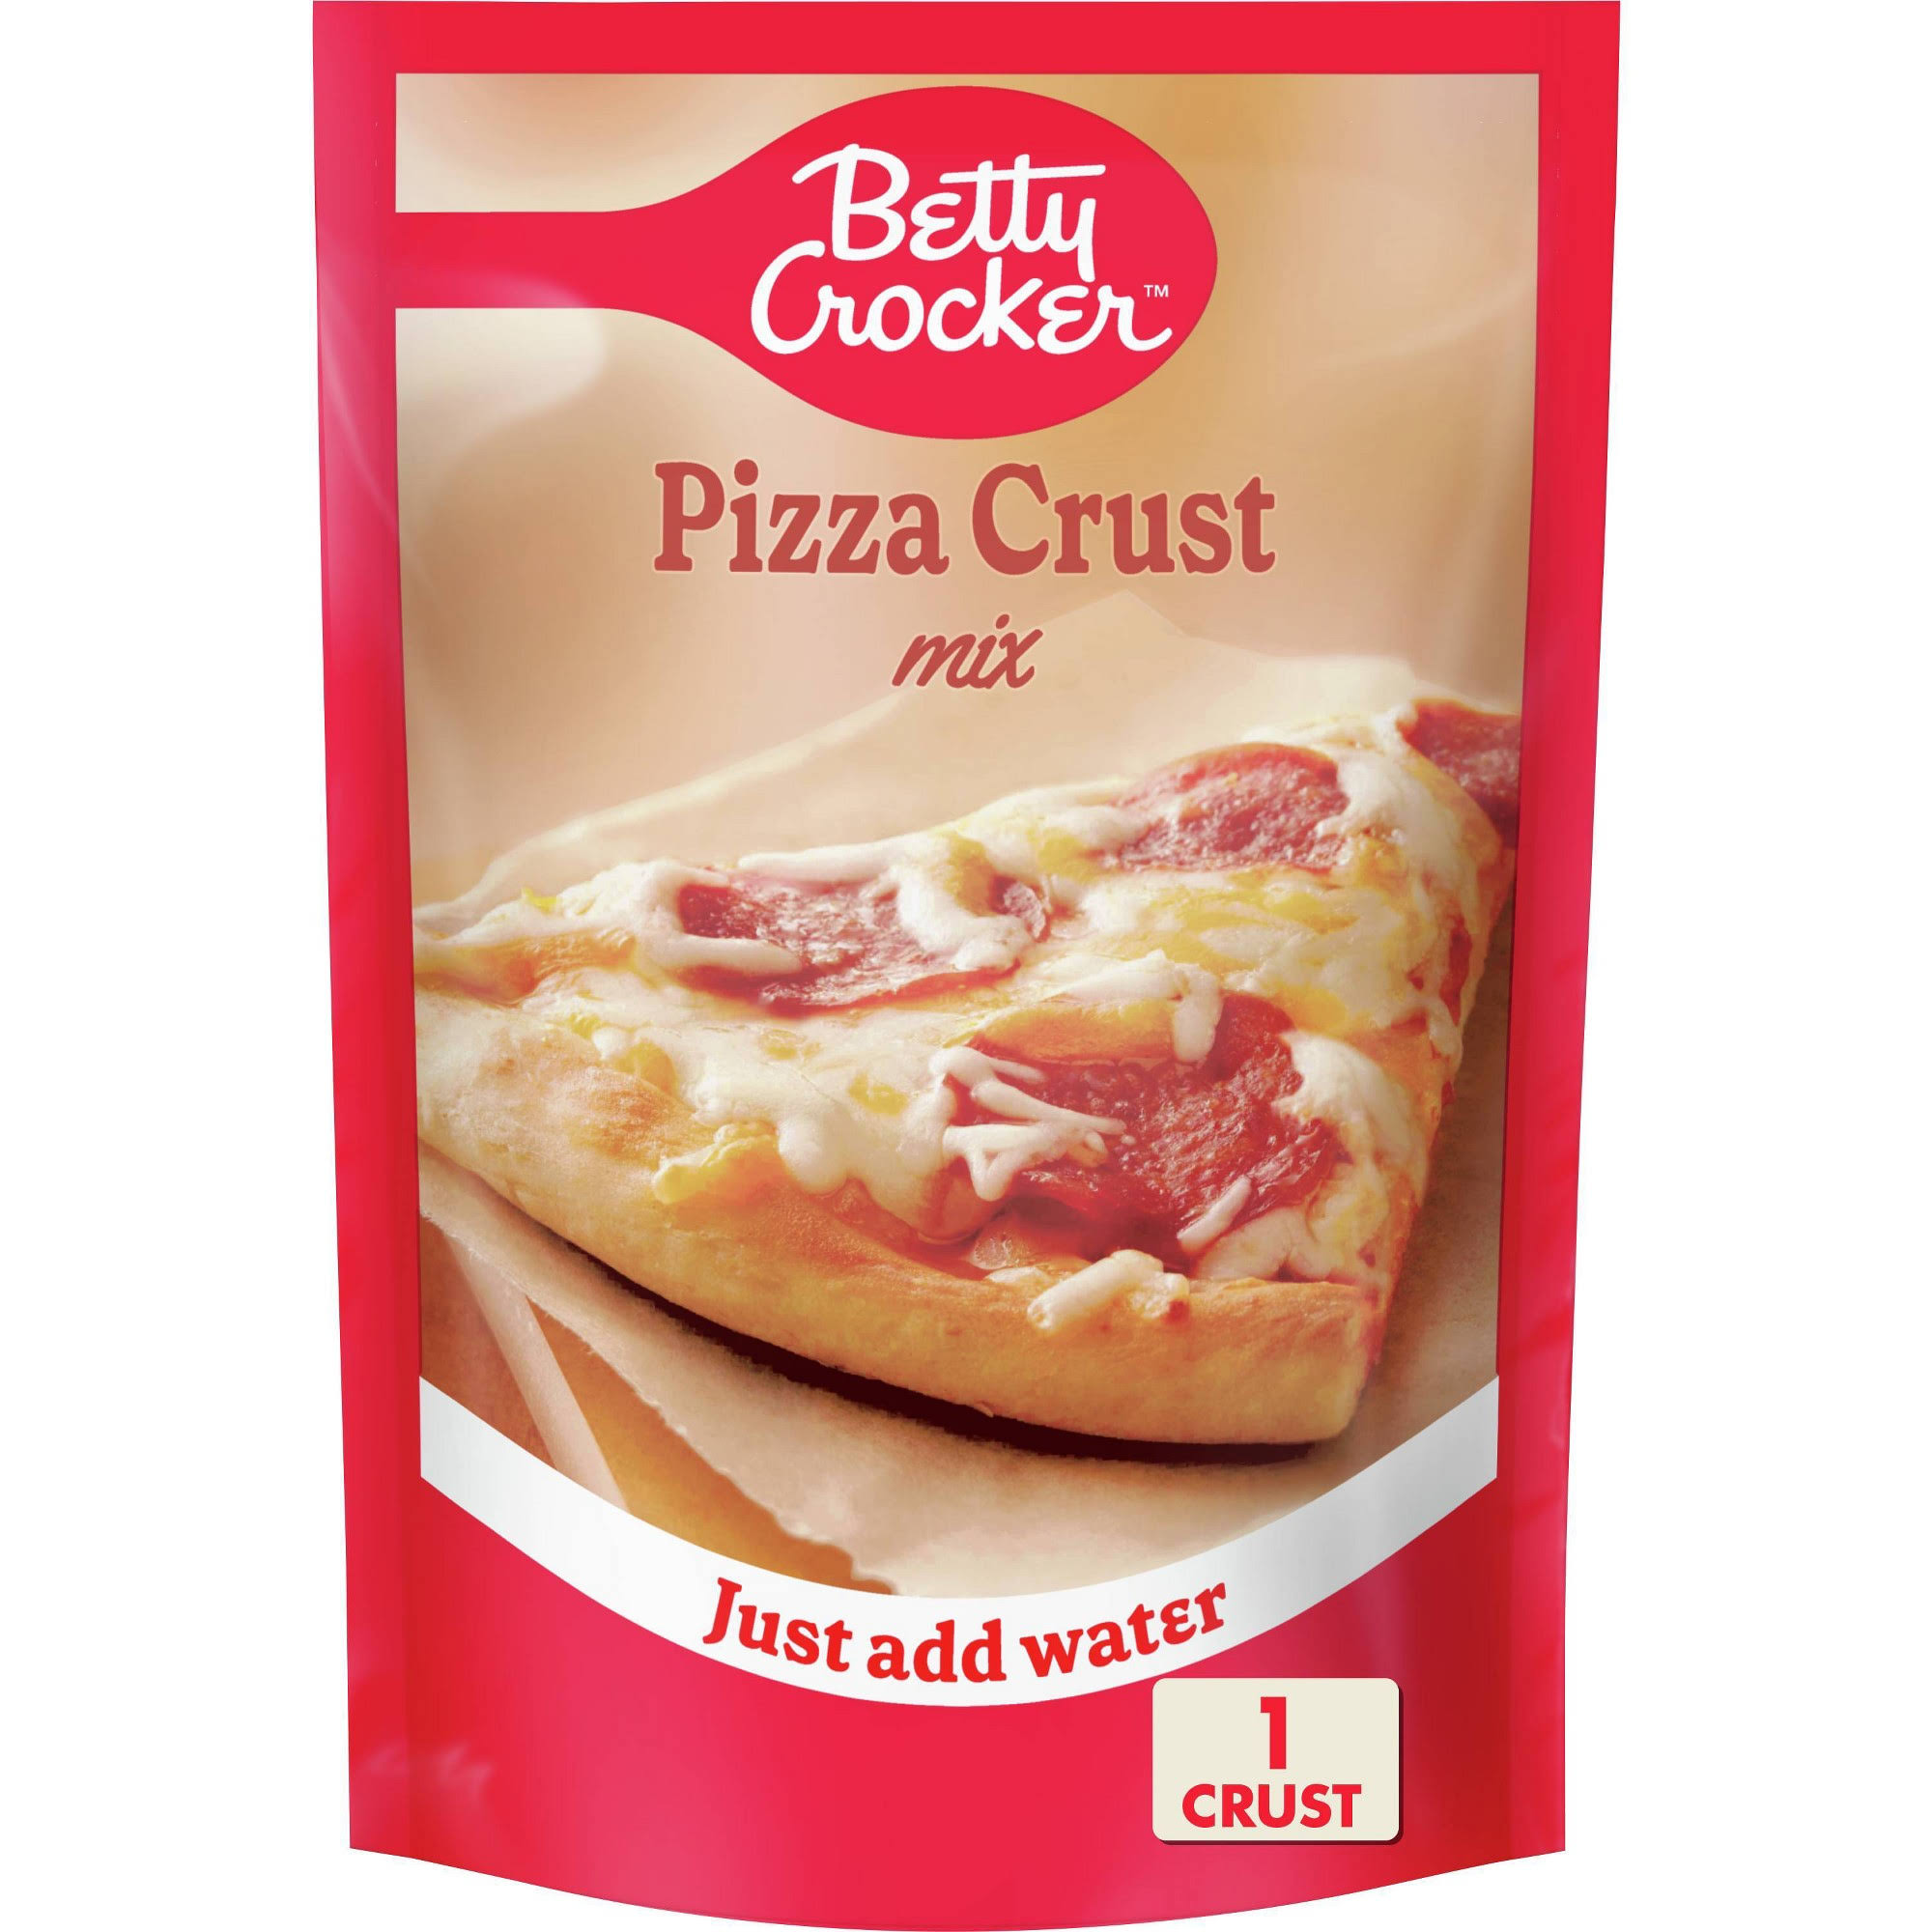 Betty Crocker Pizza Crust Mix - 6.5 oz